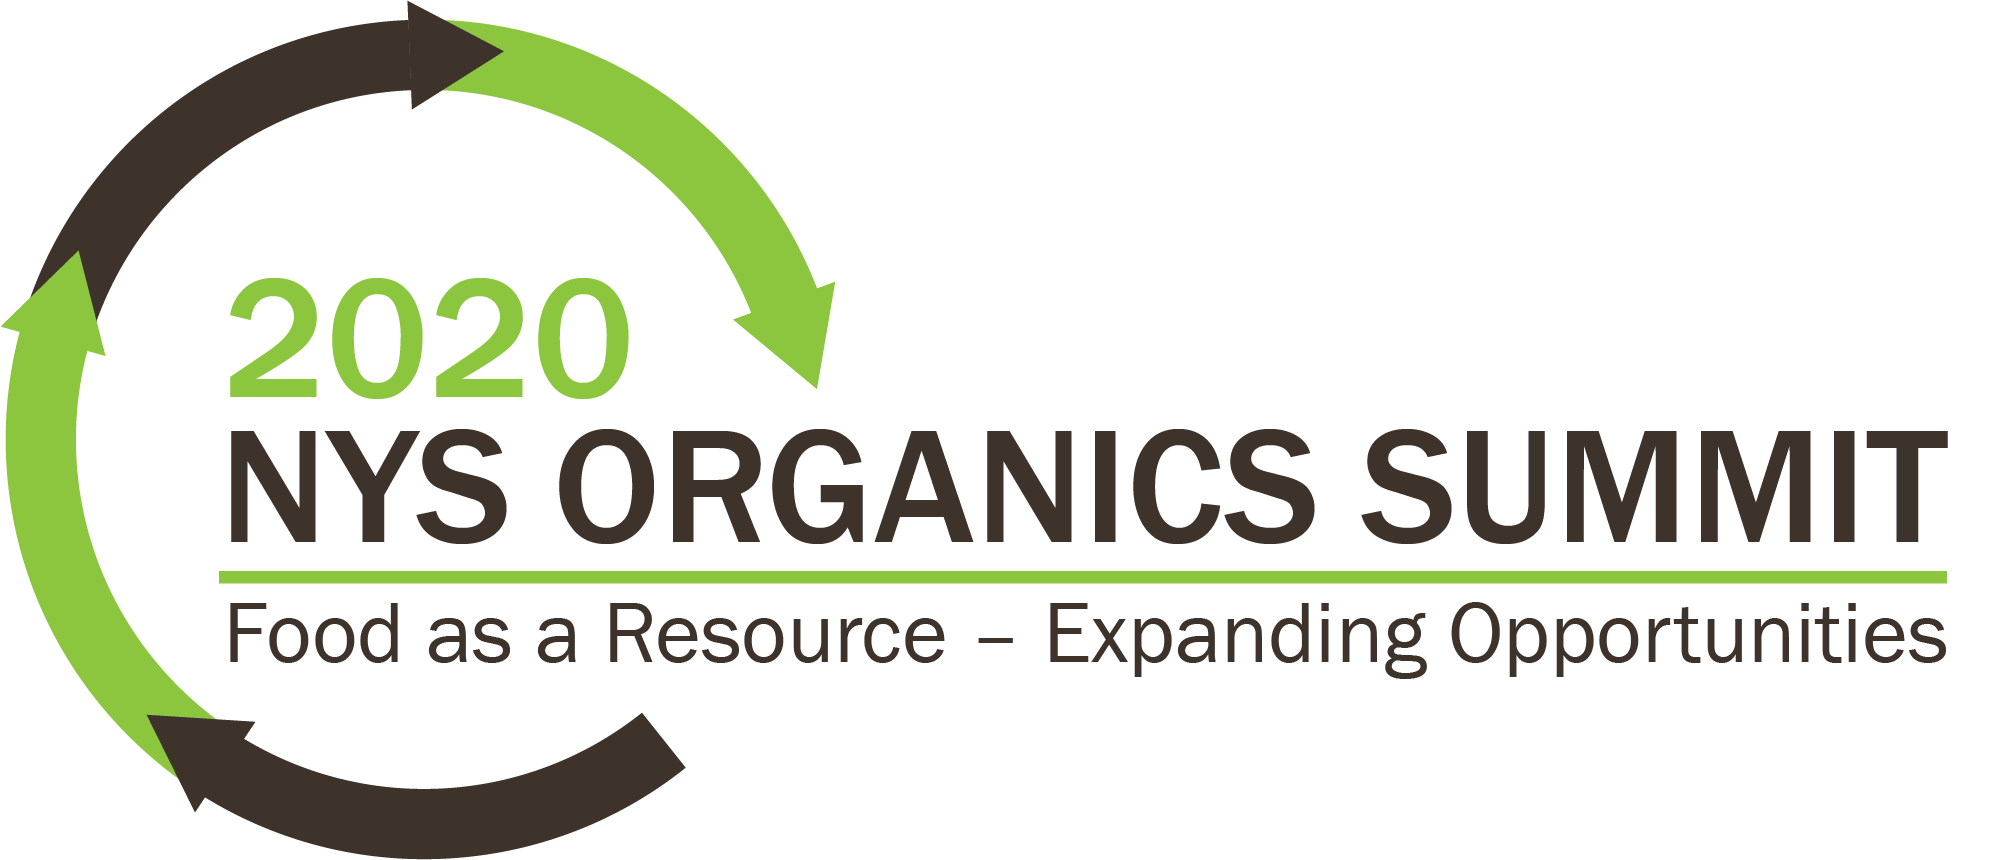 NYS Organics Summit